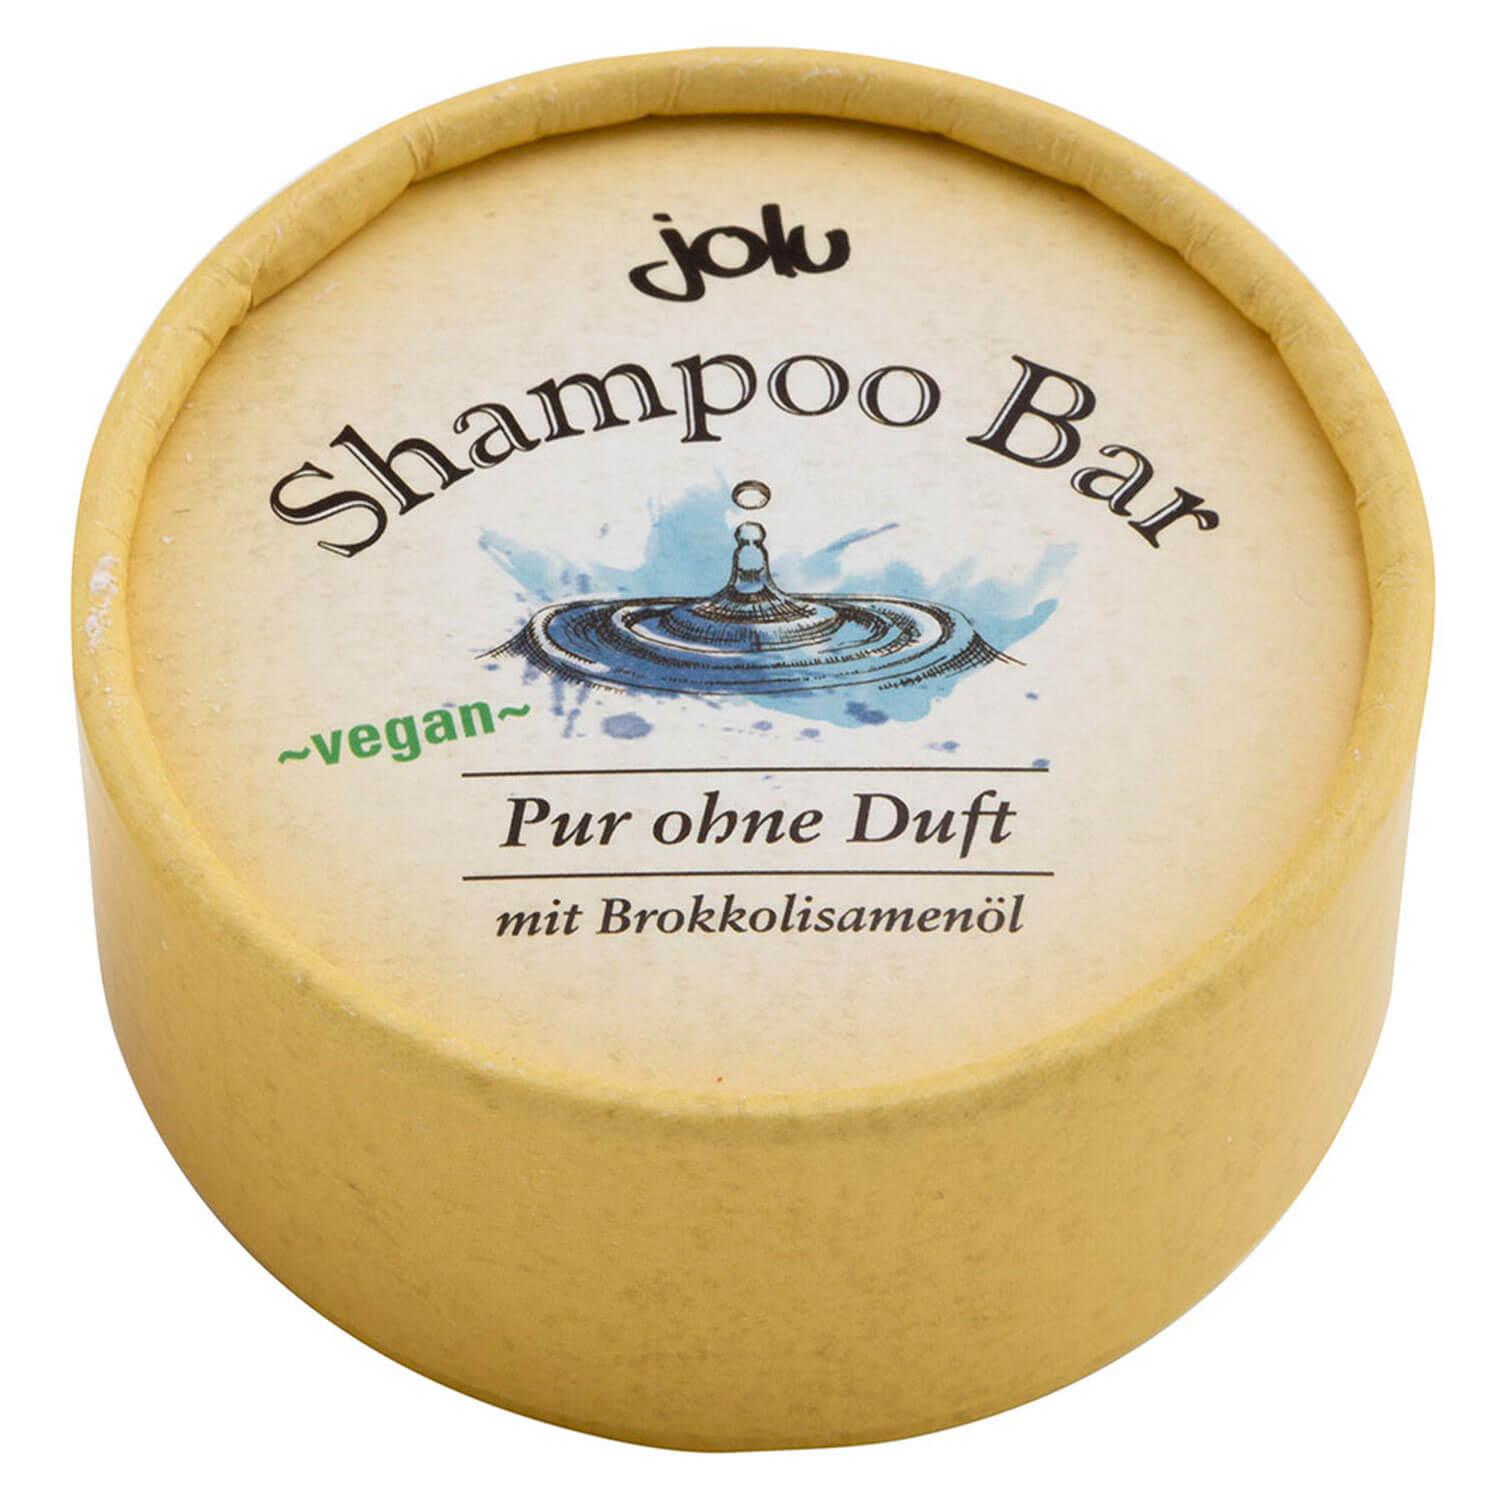 jolu - Shampoo Bar Pure